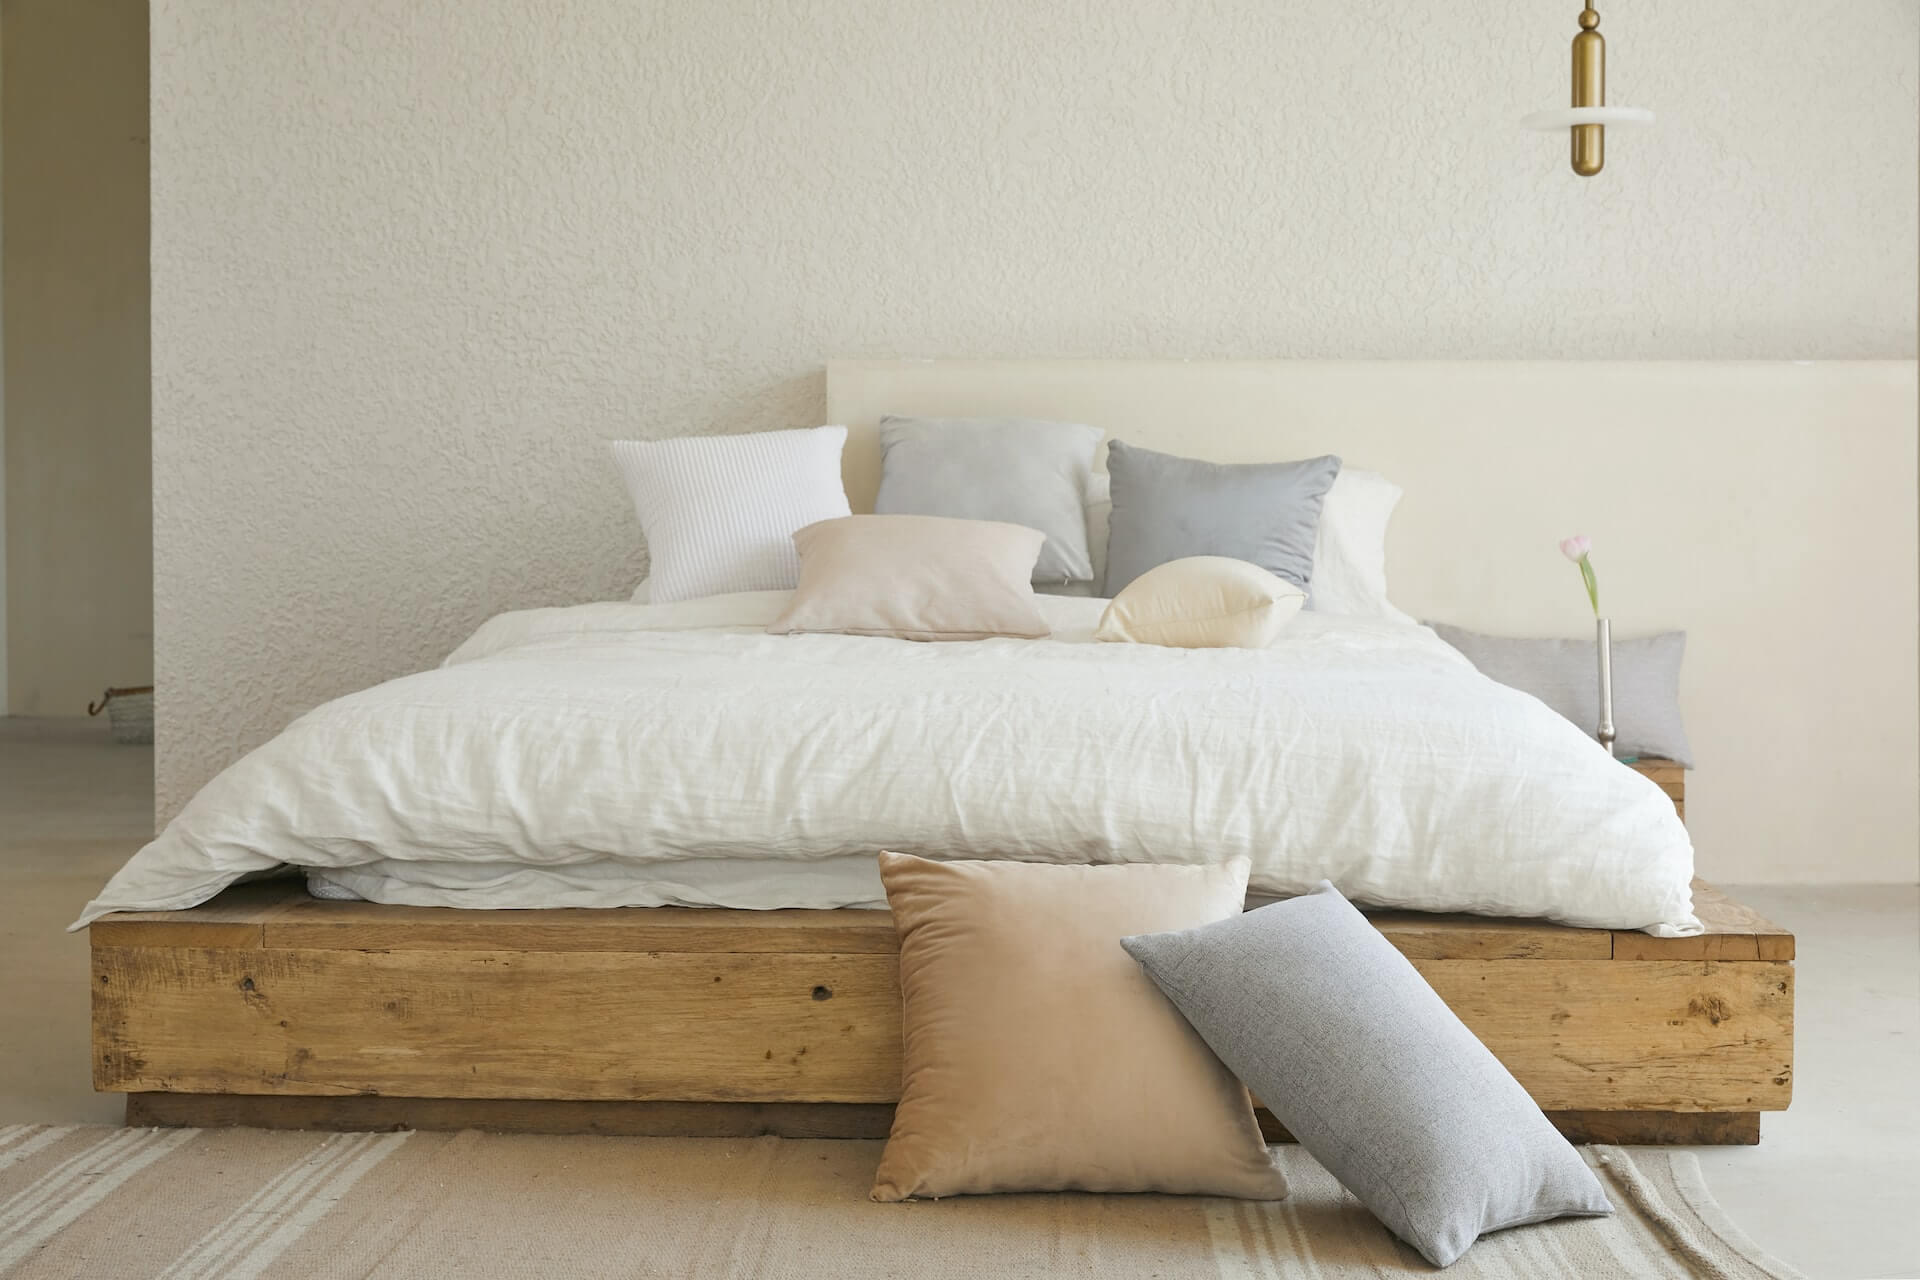 Why You Should Choose Non-Toxic Pillows for a Healthier Sleep Environment?